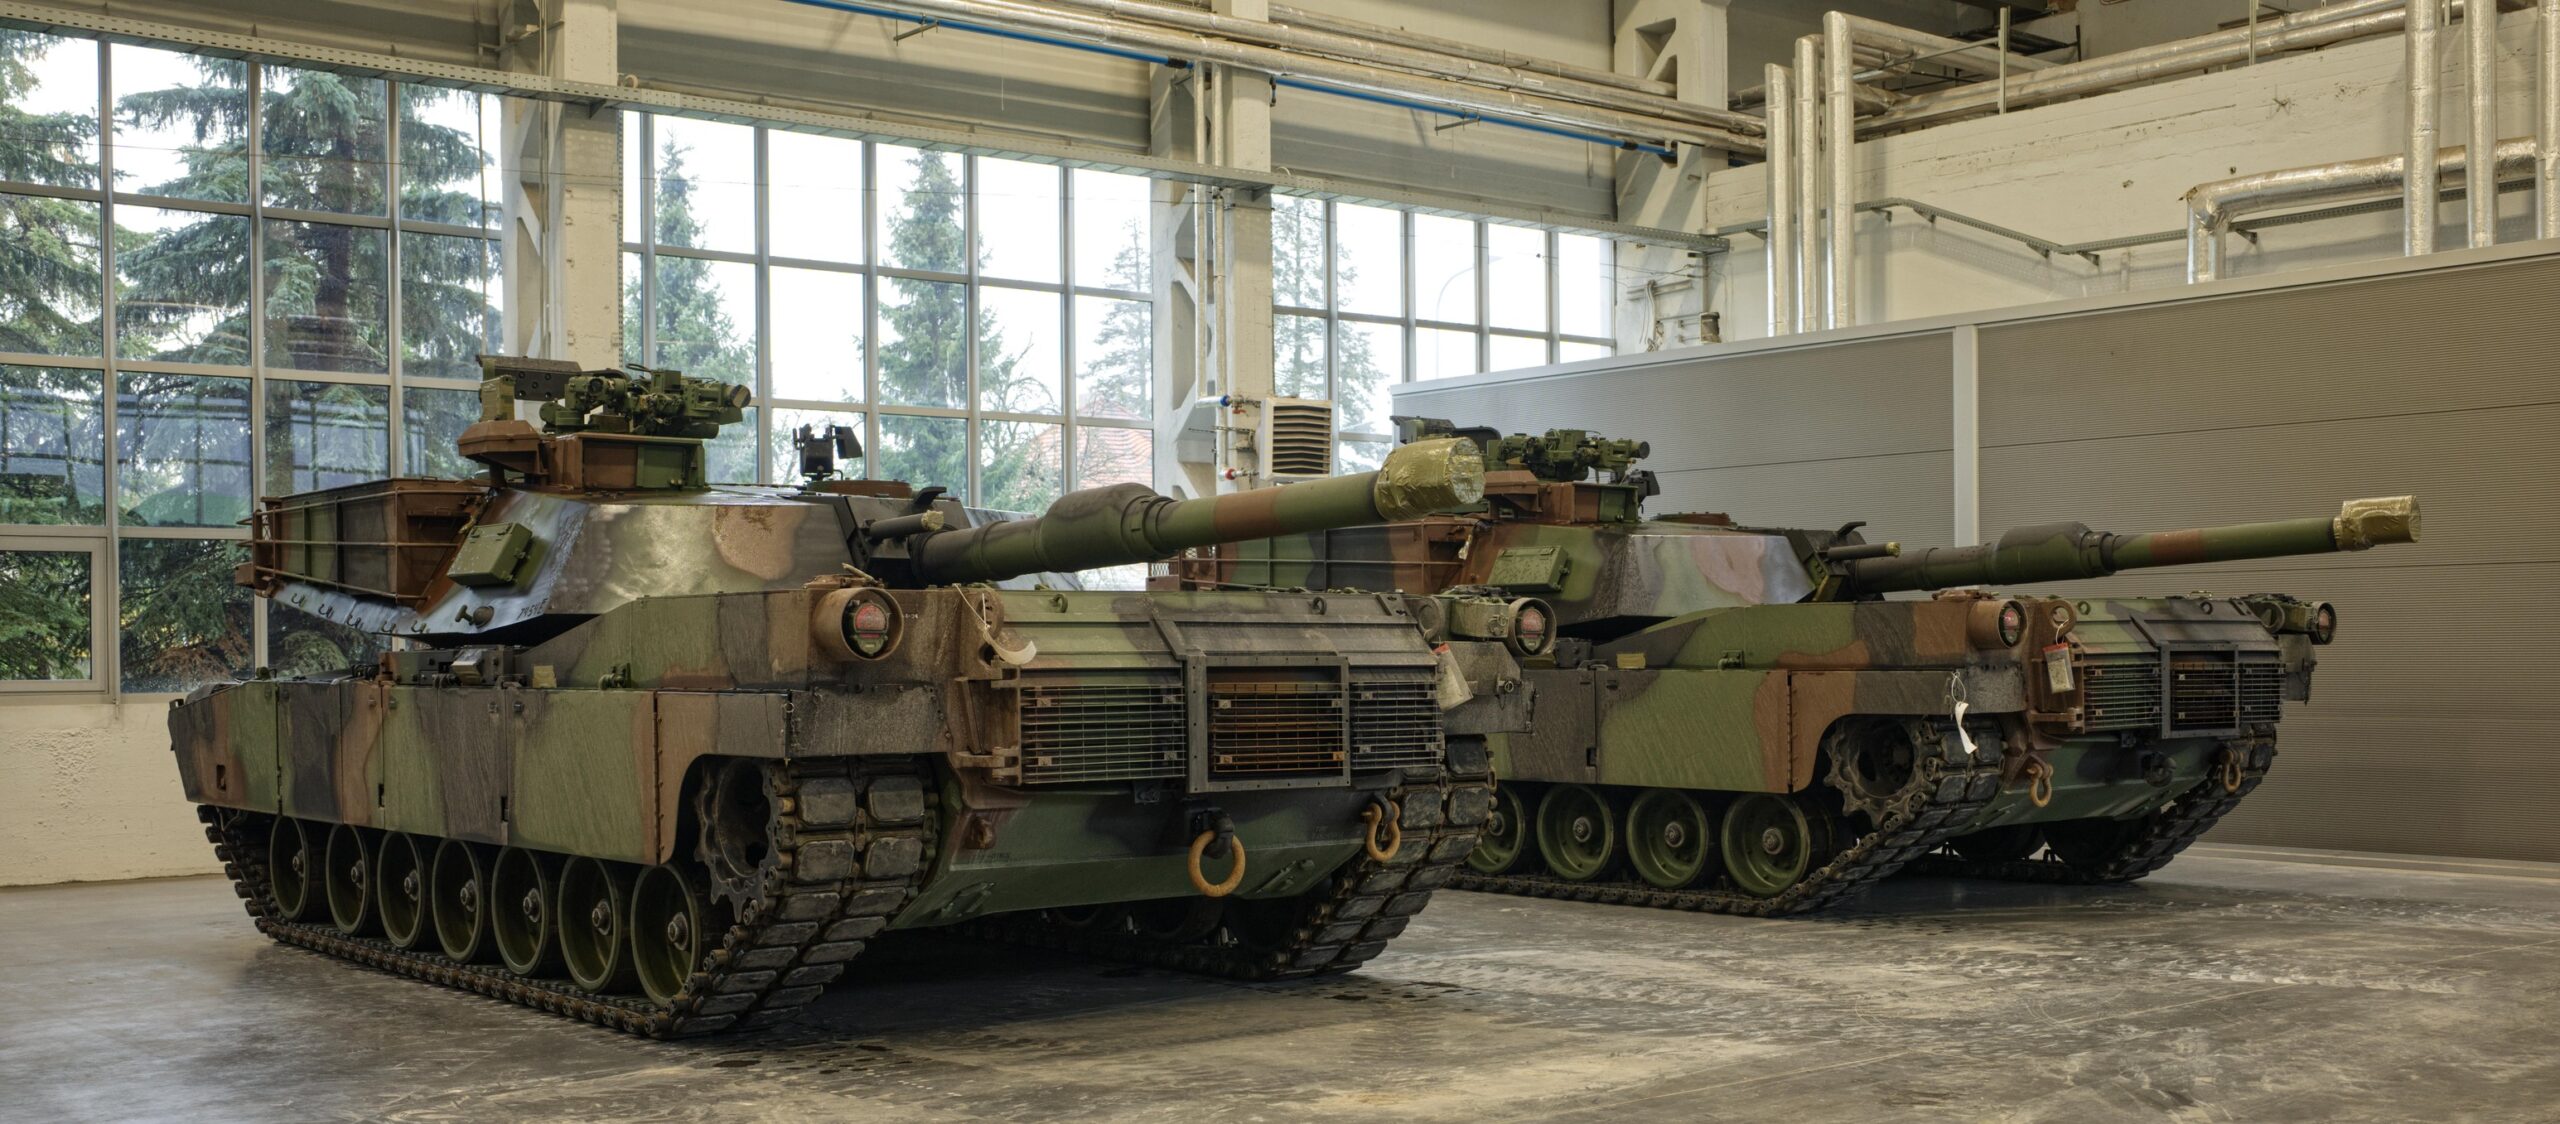 Amerykańskie czołgi w poznańskich warsztatach